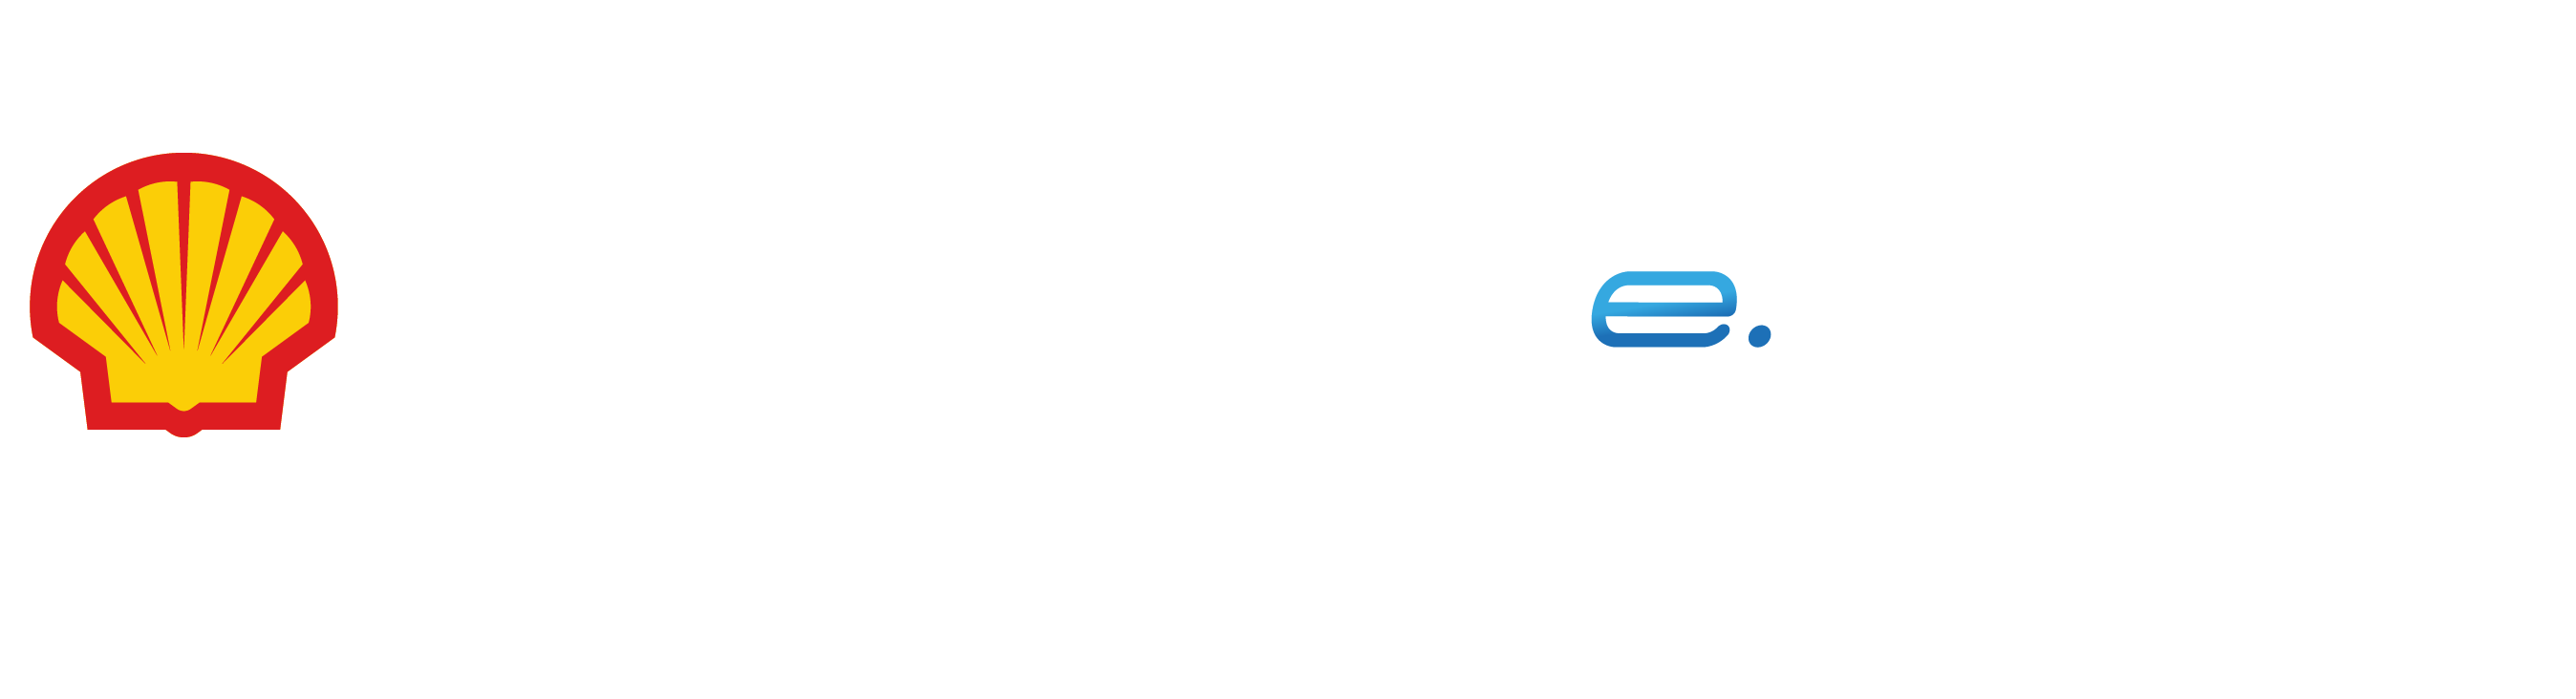 shell/nissan formula-e logo